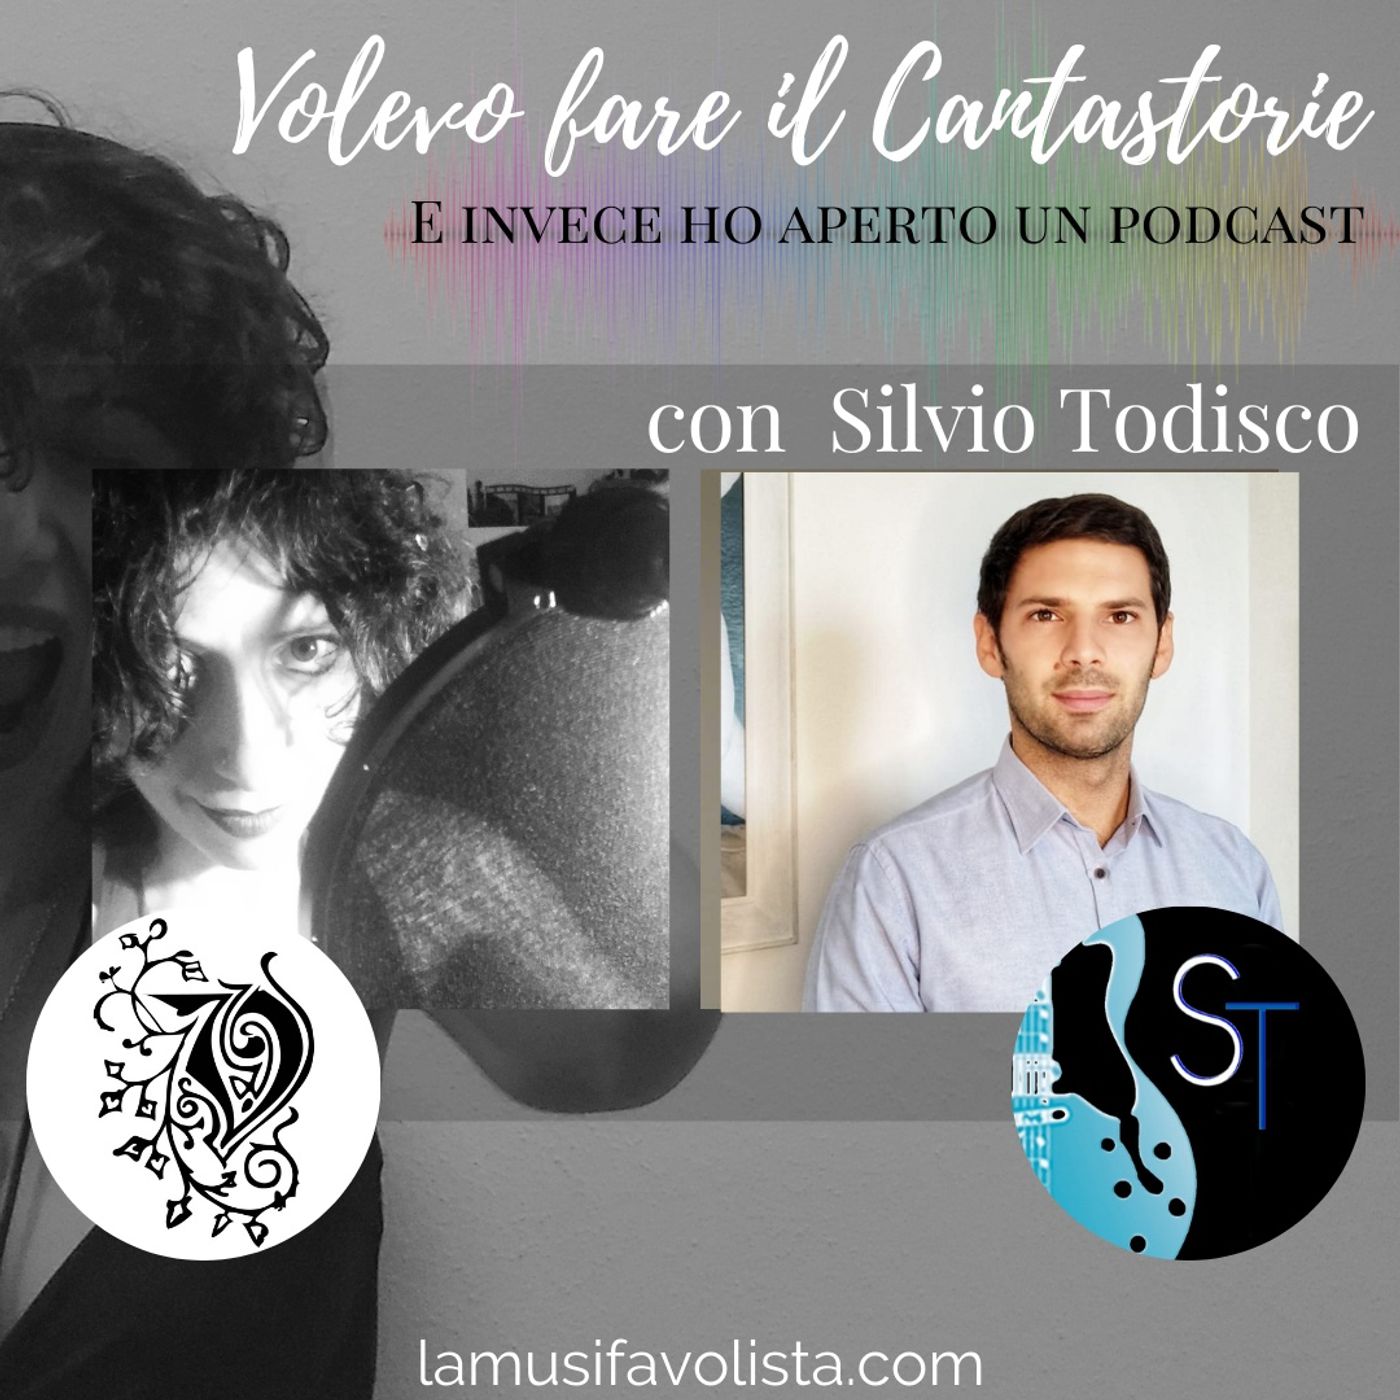 Intervista con Silvio Todisco • VOLEVO FARE IL CANTASTORIE